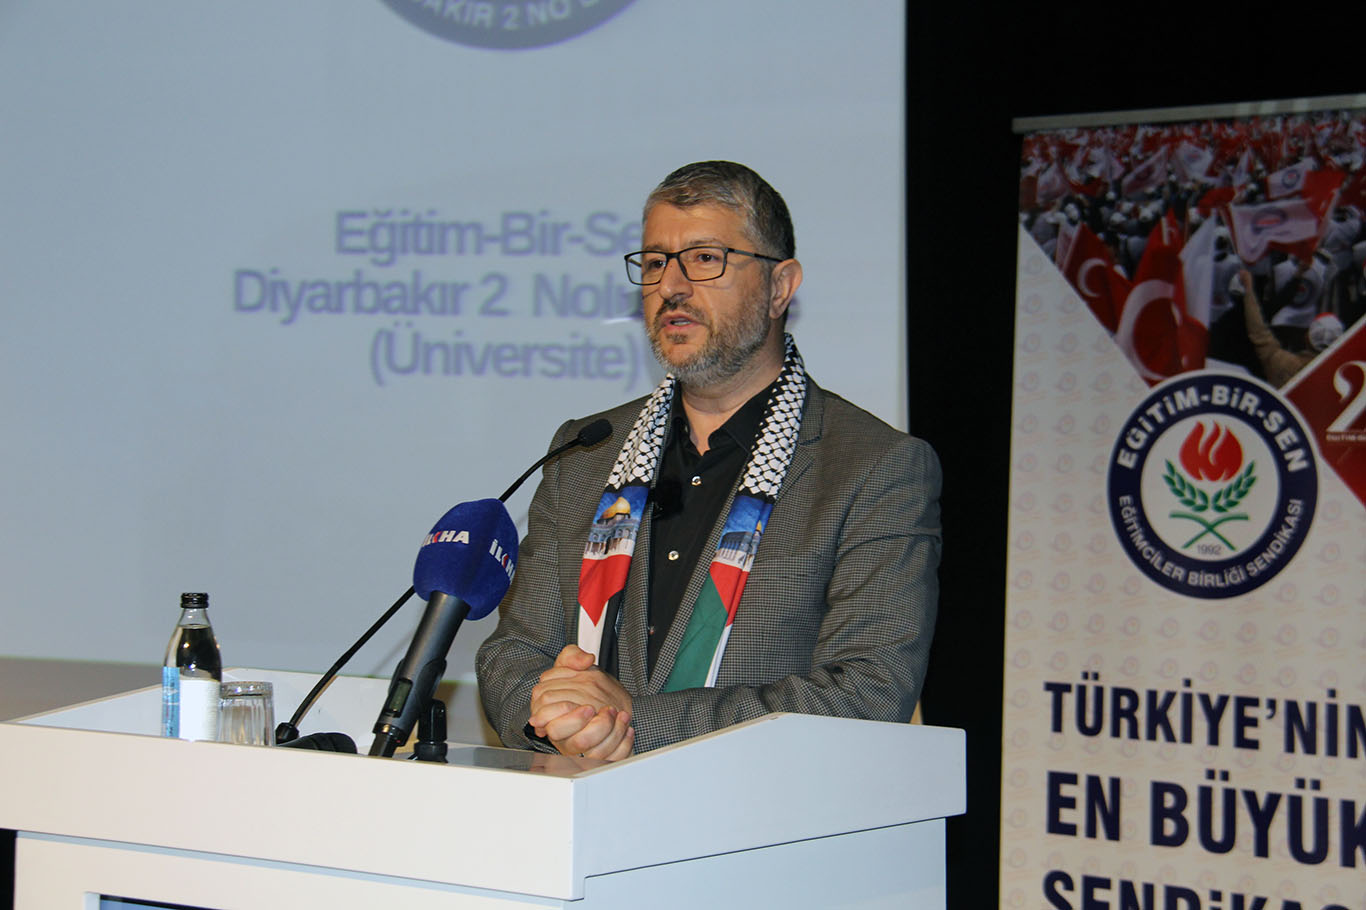 Siyer Vakfı Başkanı Yıldırım Diyarbakır'da konuştu: Sürecin sonu Mescid-i Aksa'da zafer namazı kılmaktır